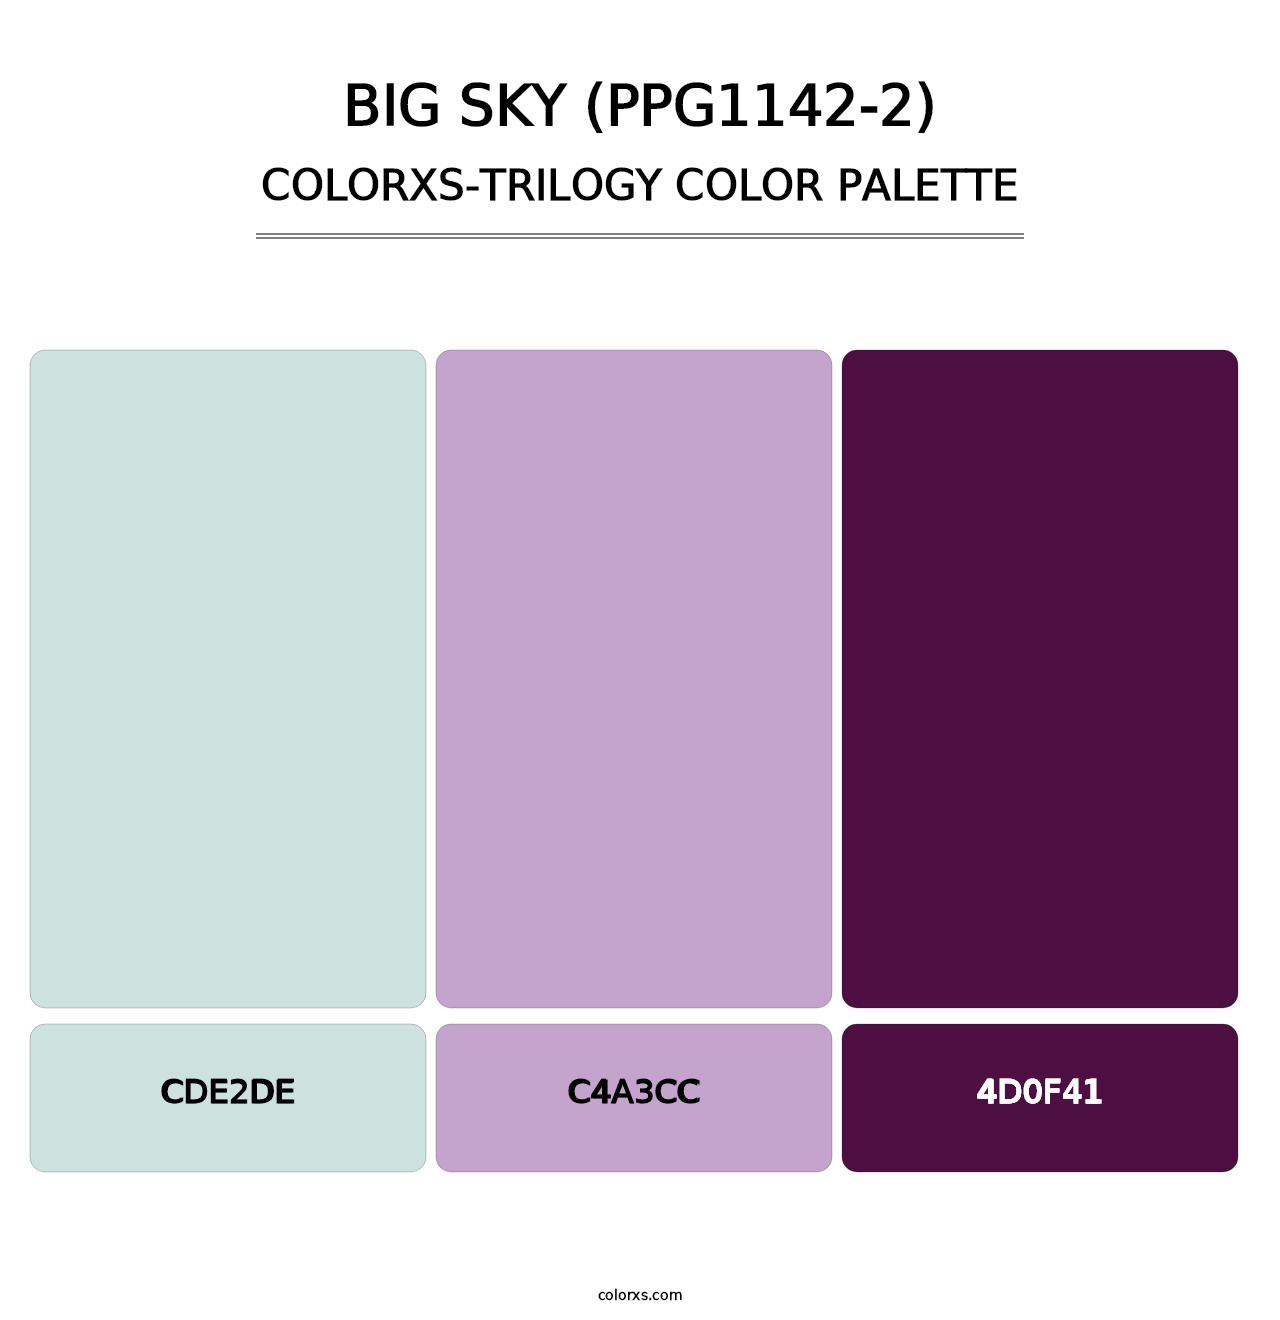 Big Sky (PPG1142-2) - Colorxs Trilogy Palette